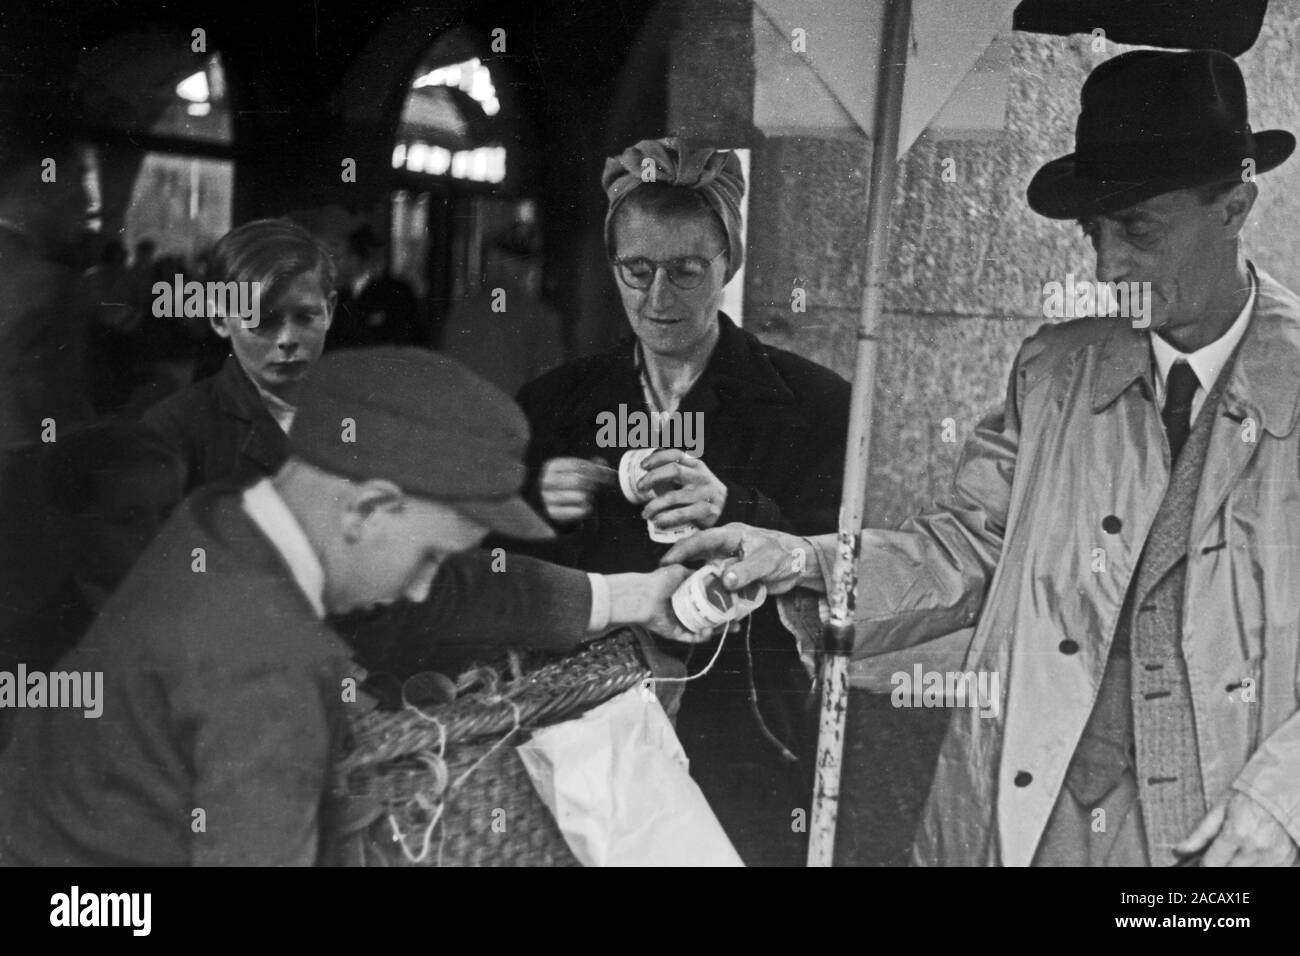 Messegänger begutachten einen Messestand, Leipzig, sachsen, Deutschland, 1948. Trade fair visitors examine a trade fair stand, Leipzig, Saxony, Germany, 1948. Stock Photo